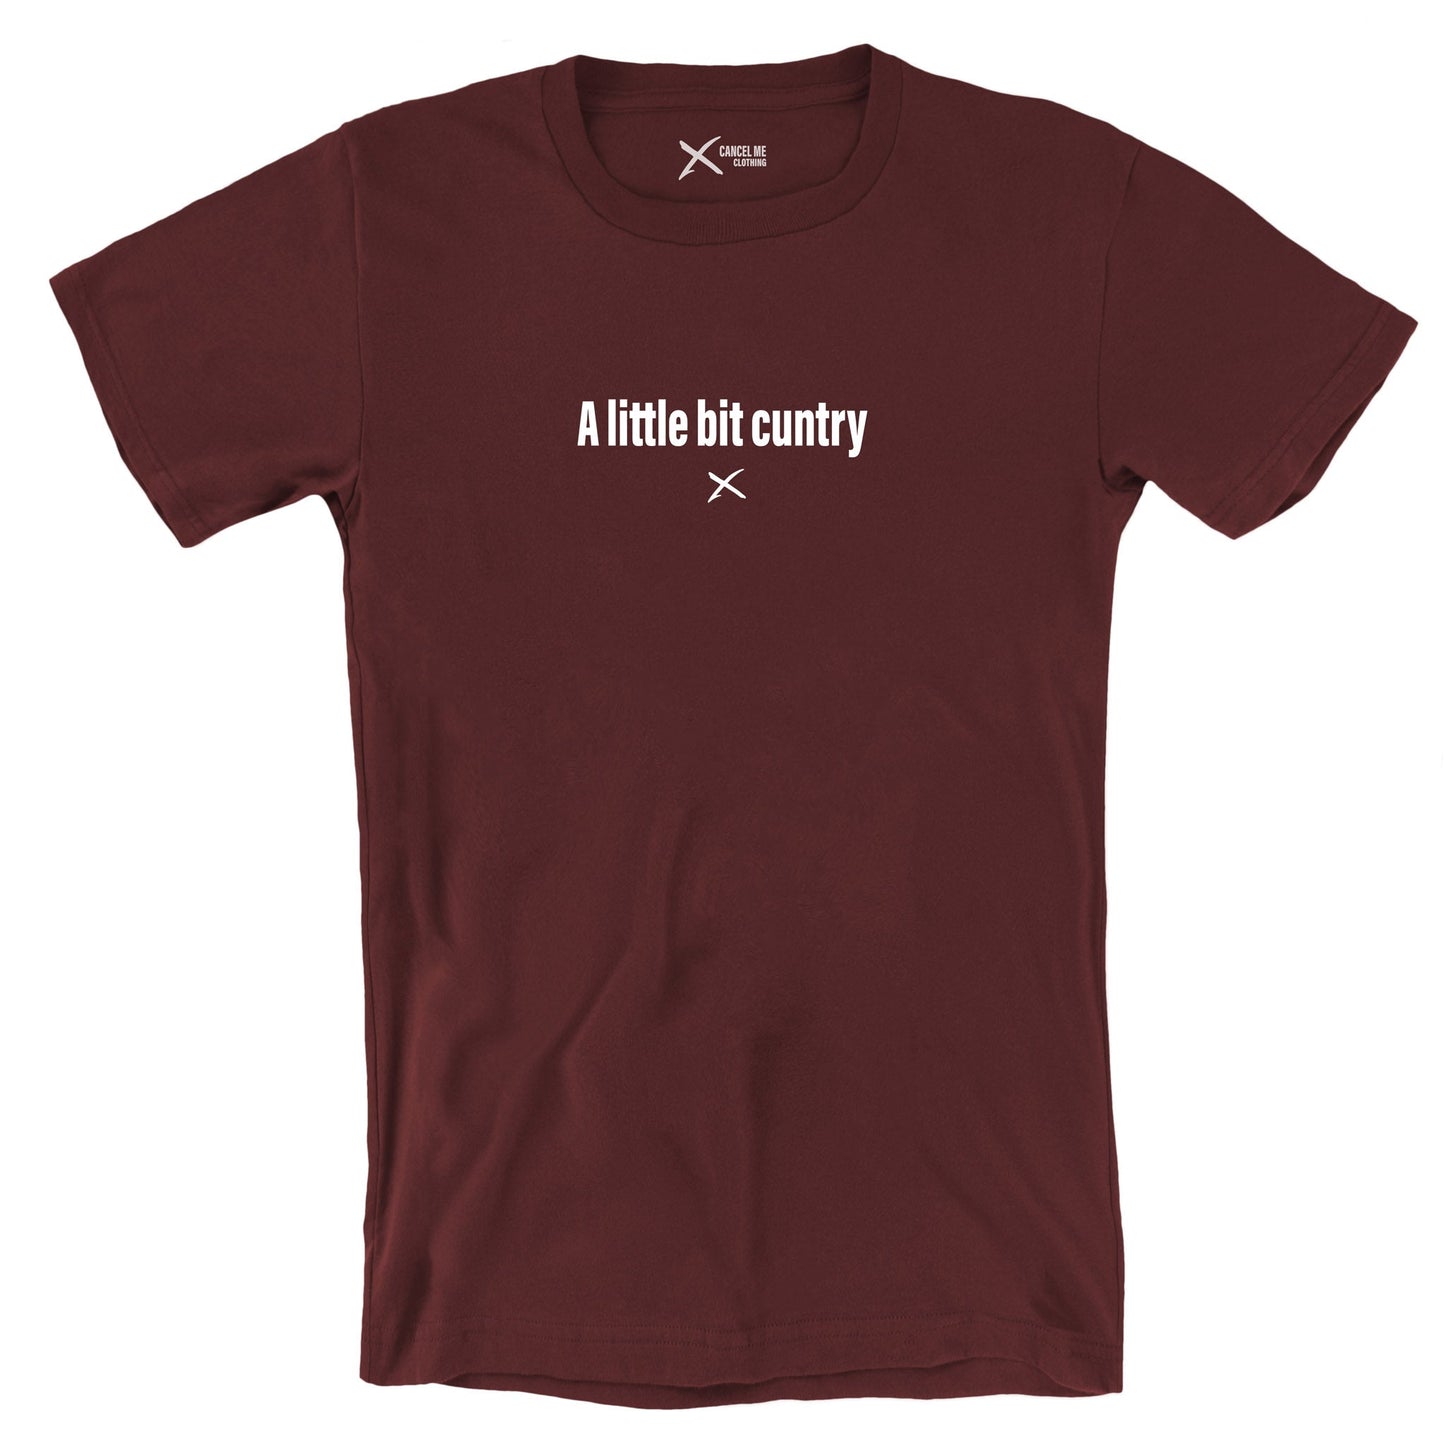 A little bit cuntry - Shirt